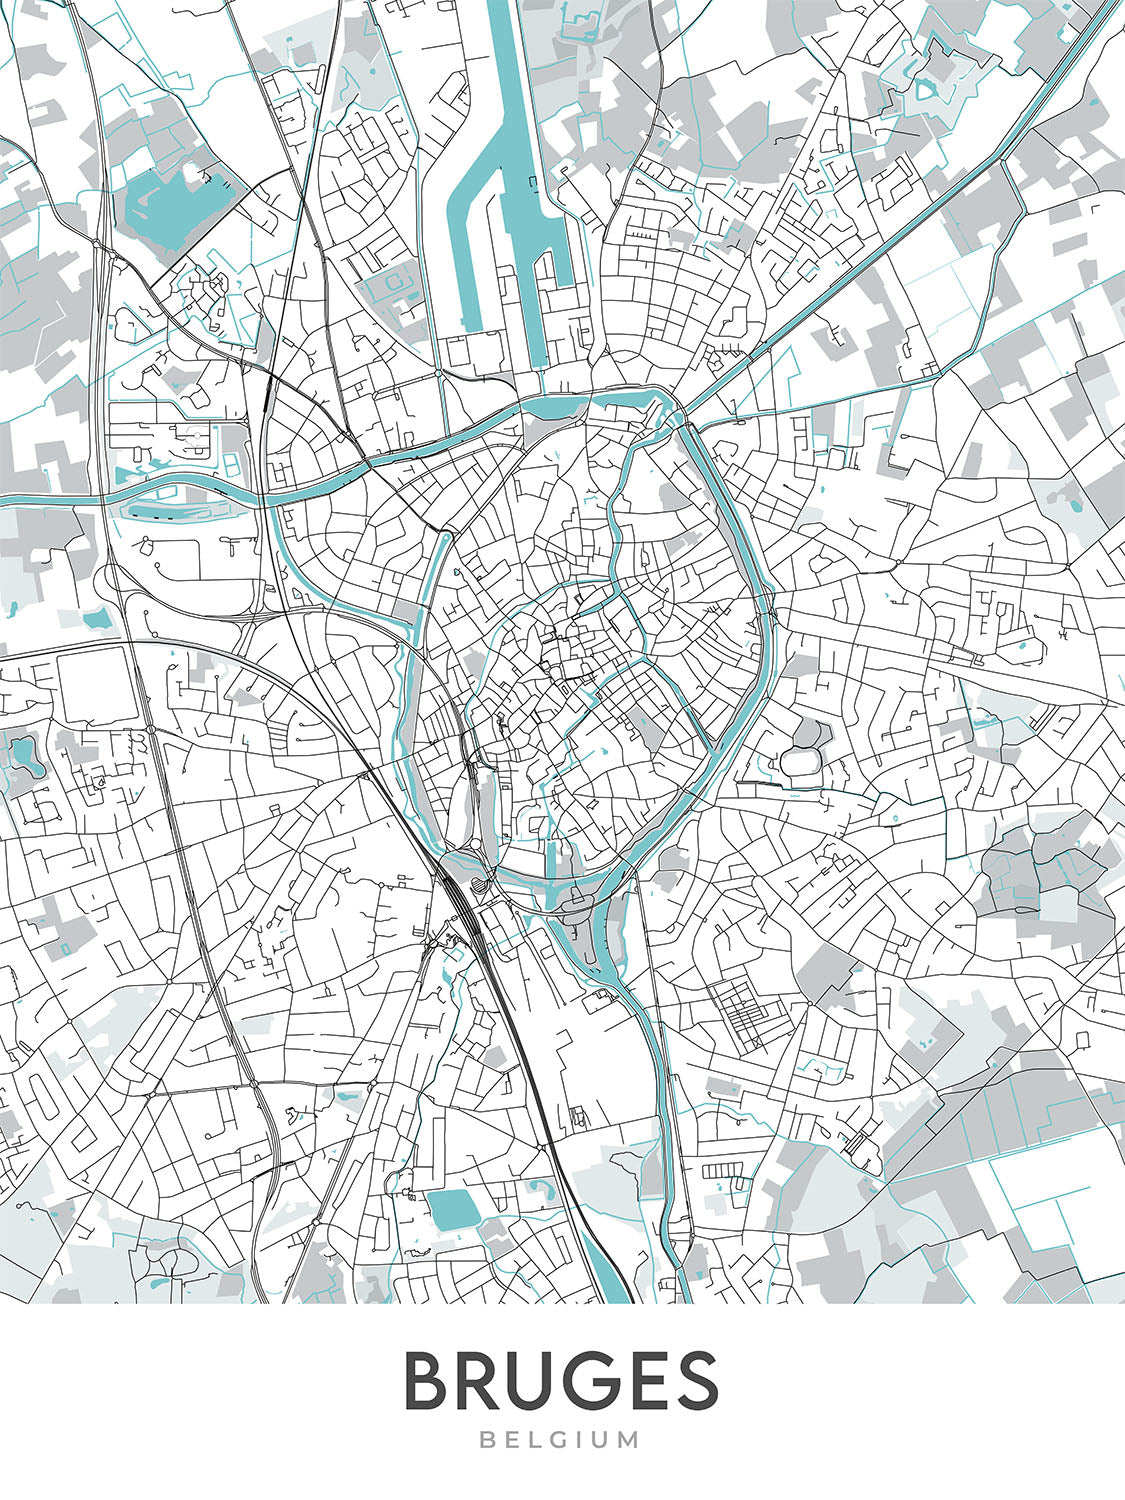 Mapa moderno de la ciudad de Brujas, Bélgica: campanario, basílica, mercado, Minnewater, Groeningemuseum